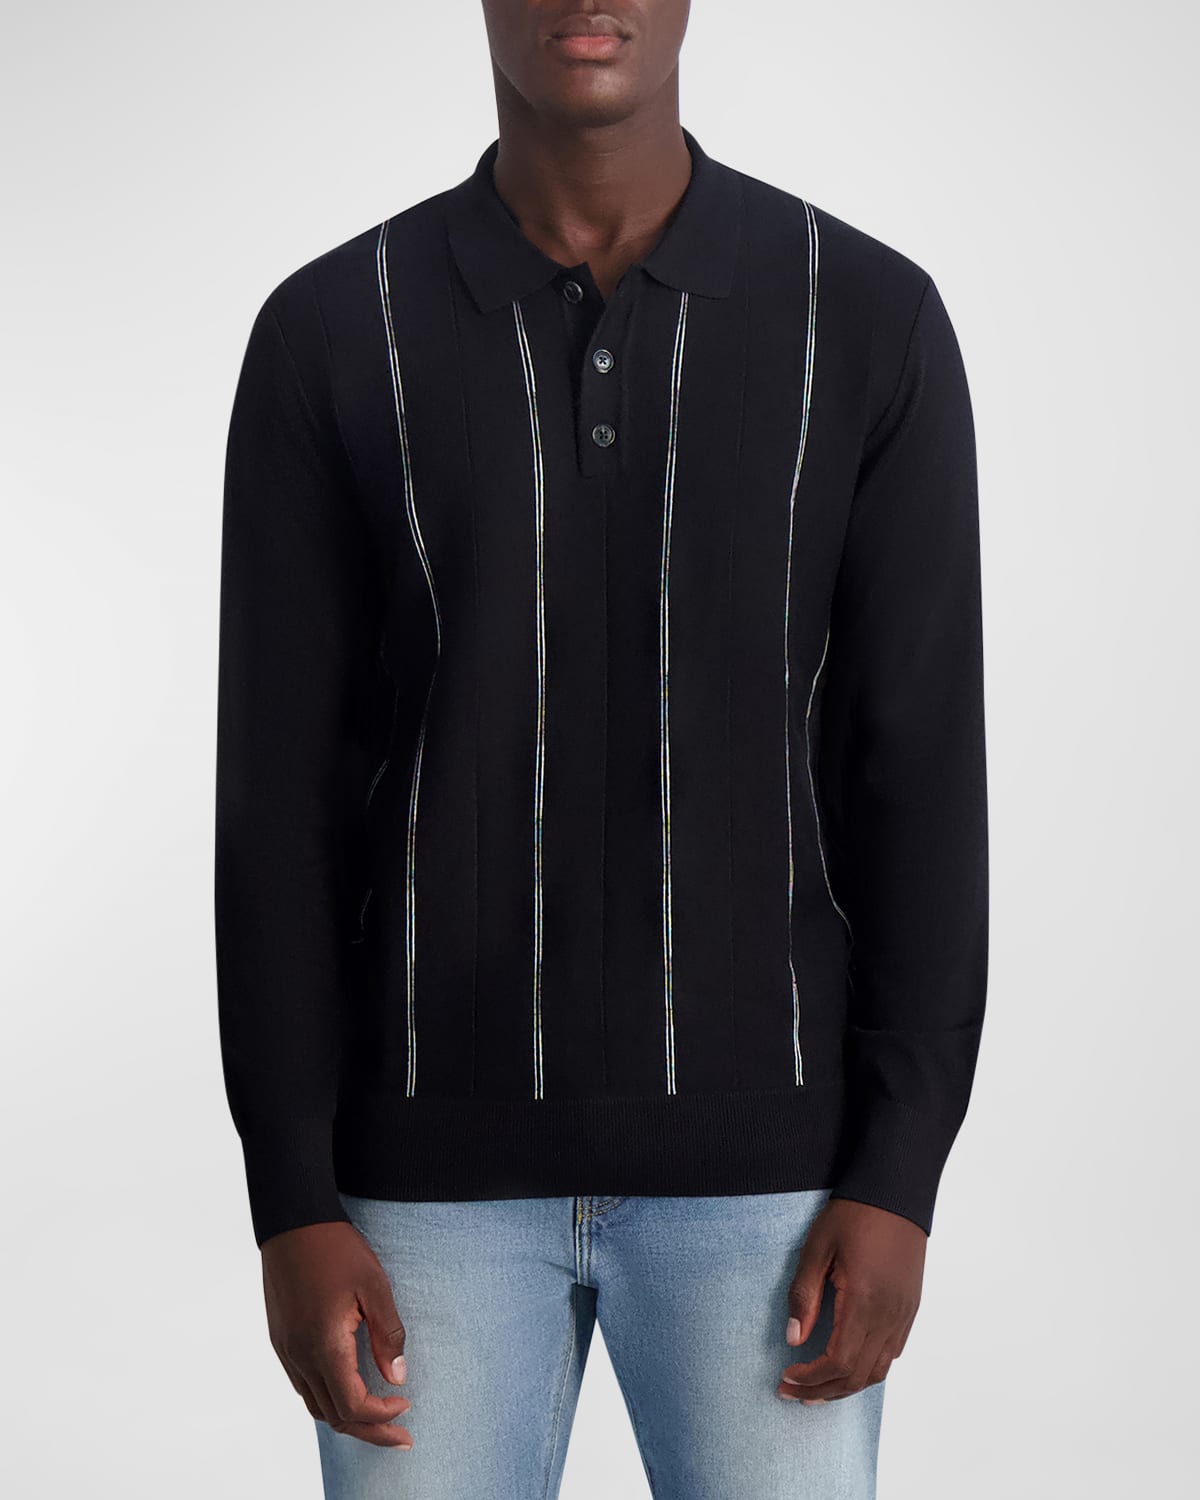 Men's Striped Polo Sweater